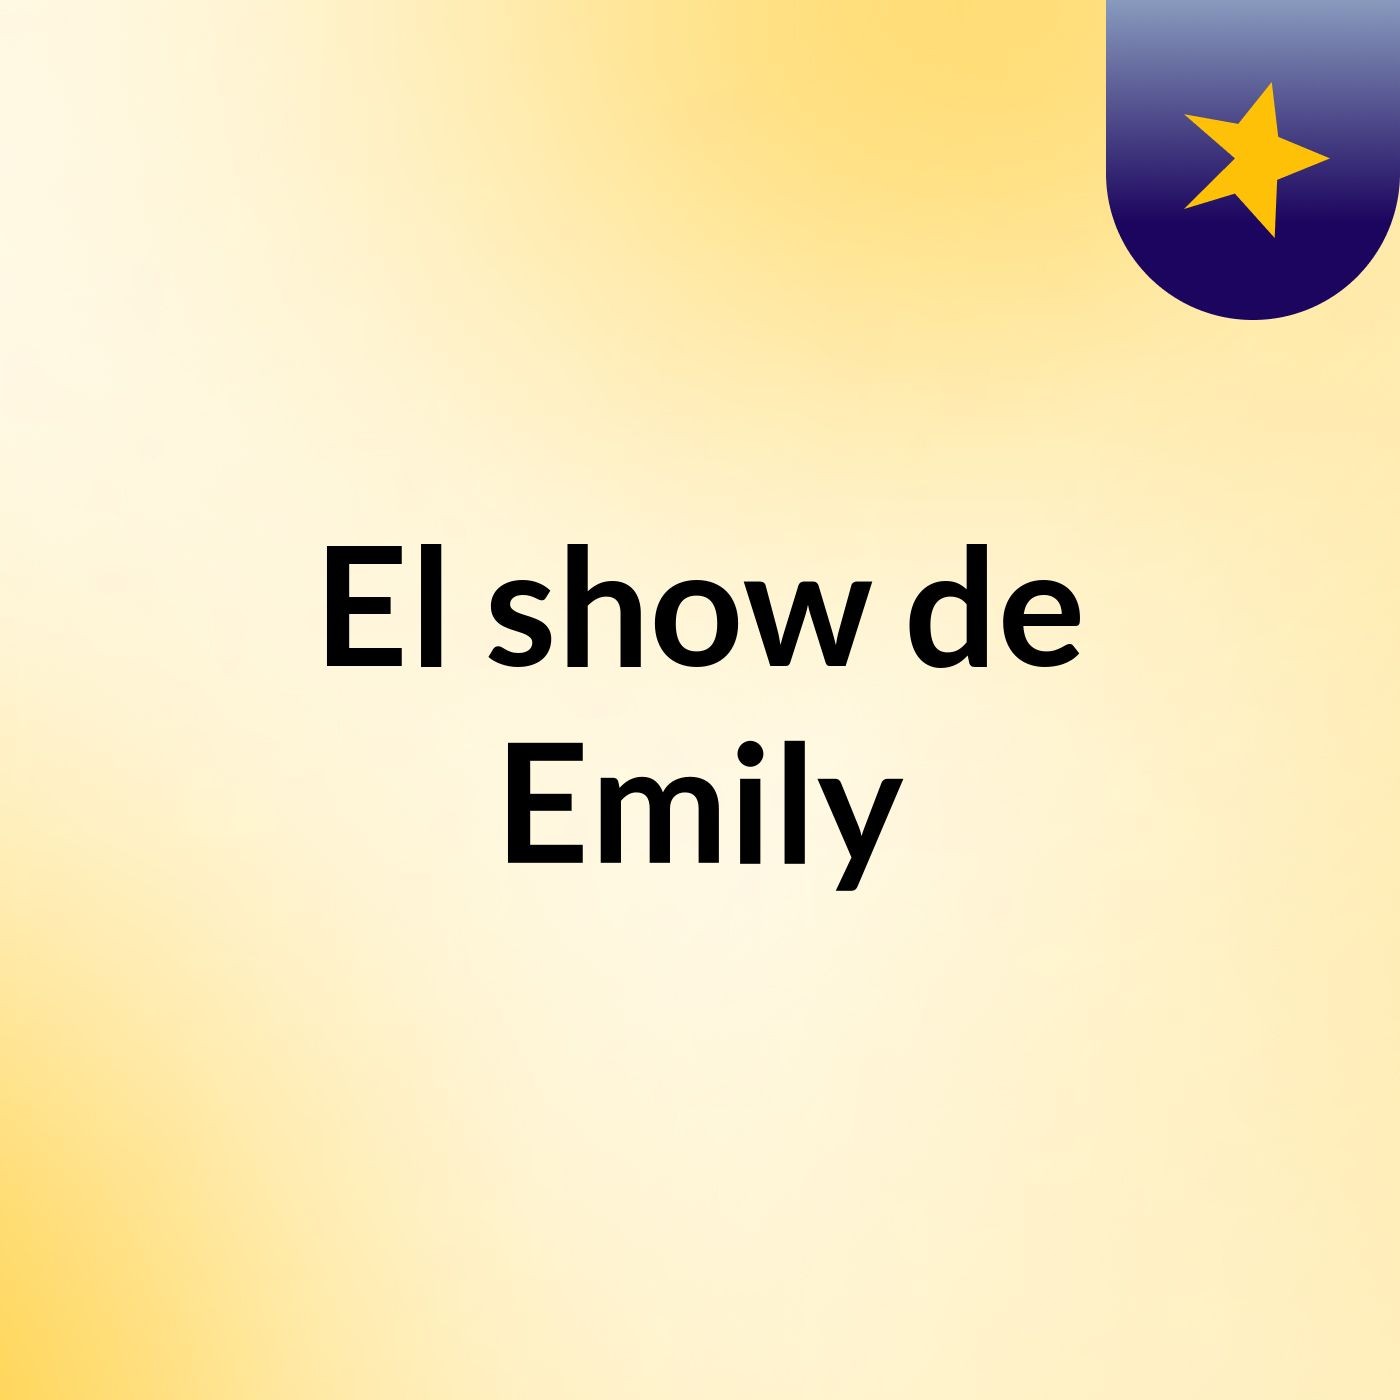 El show de Emily